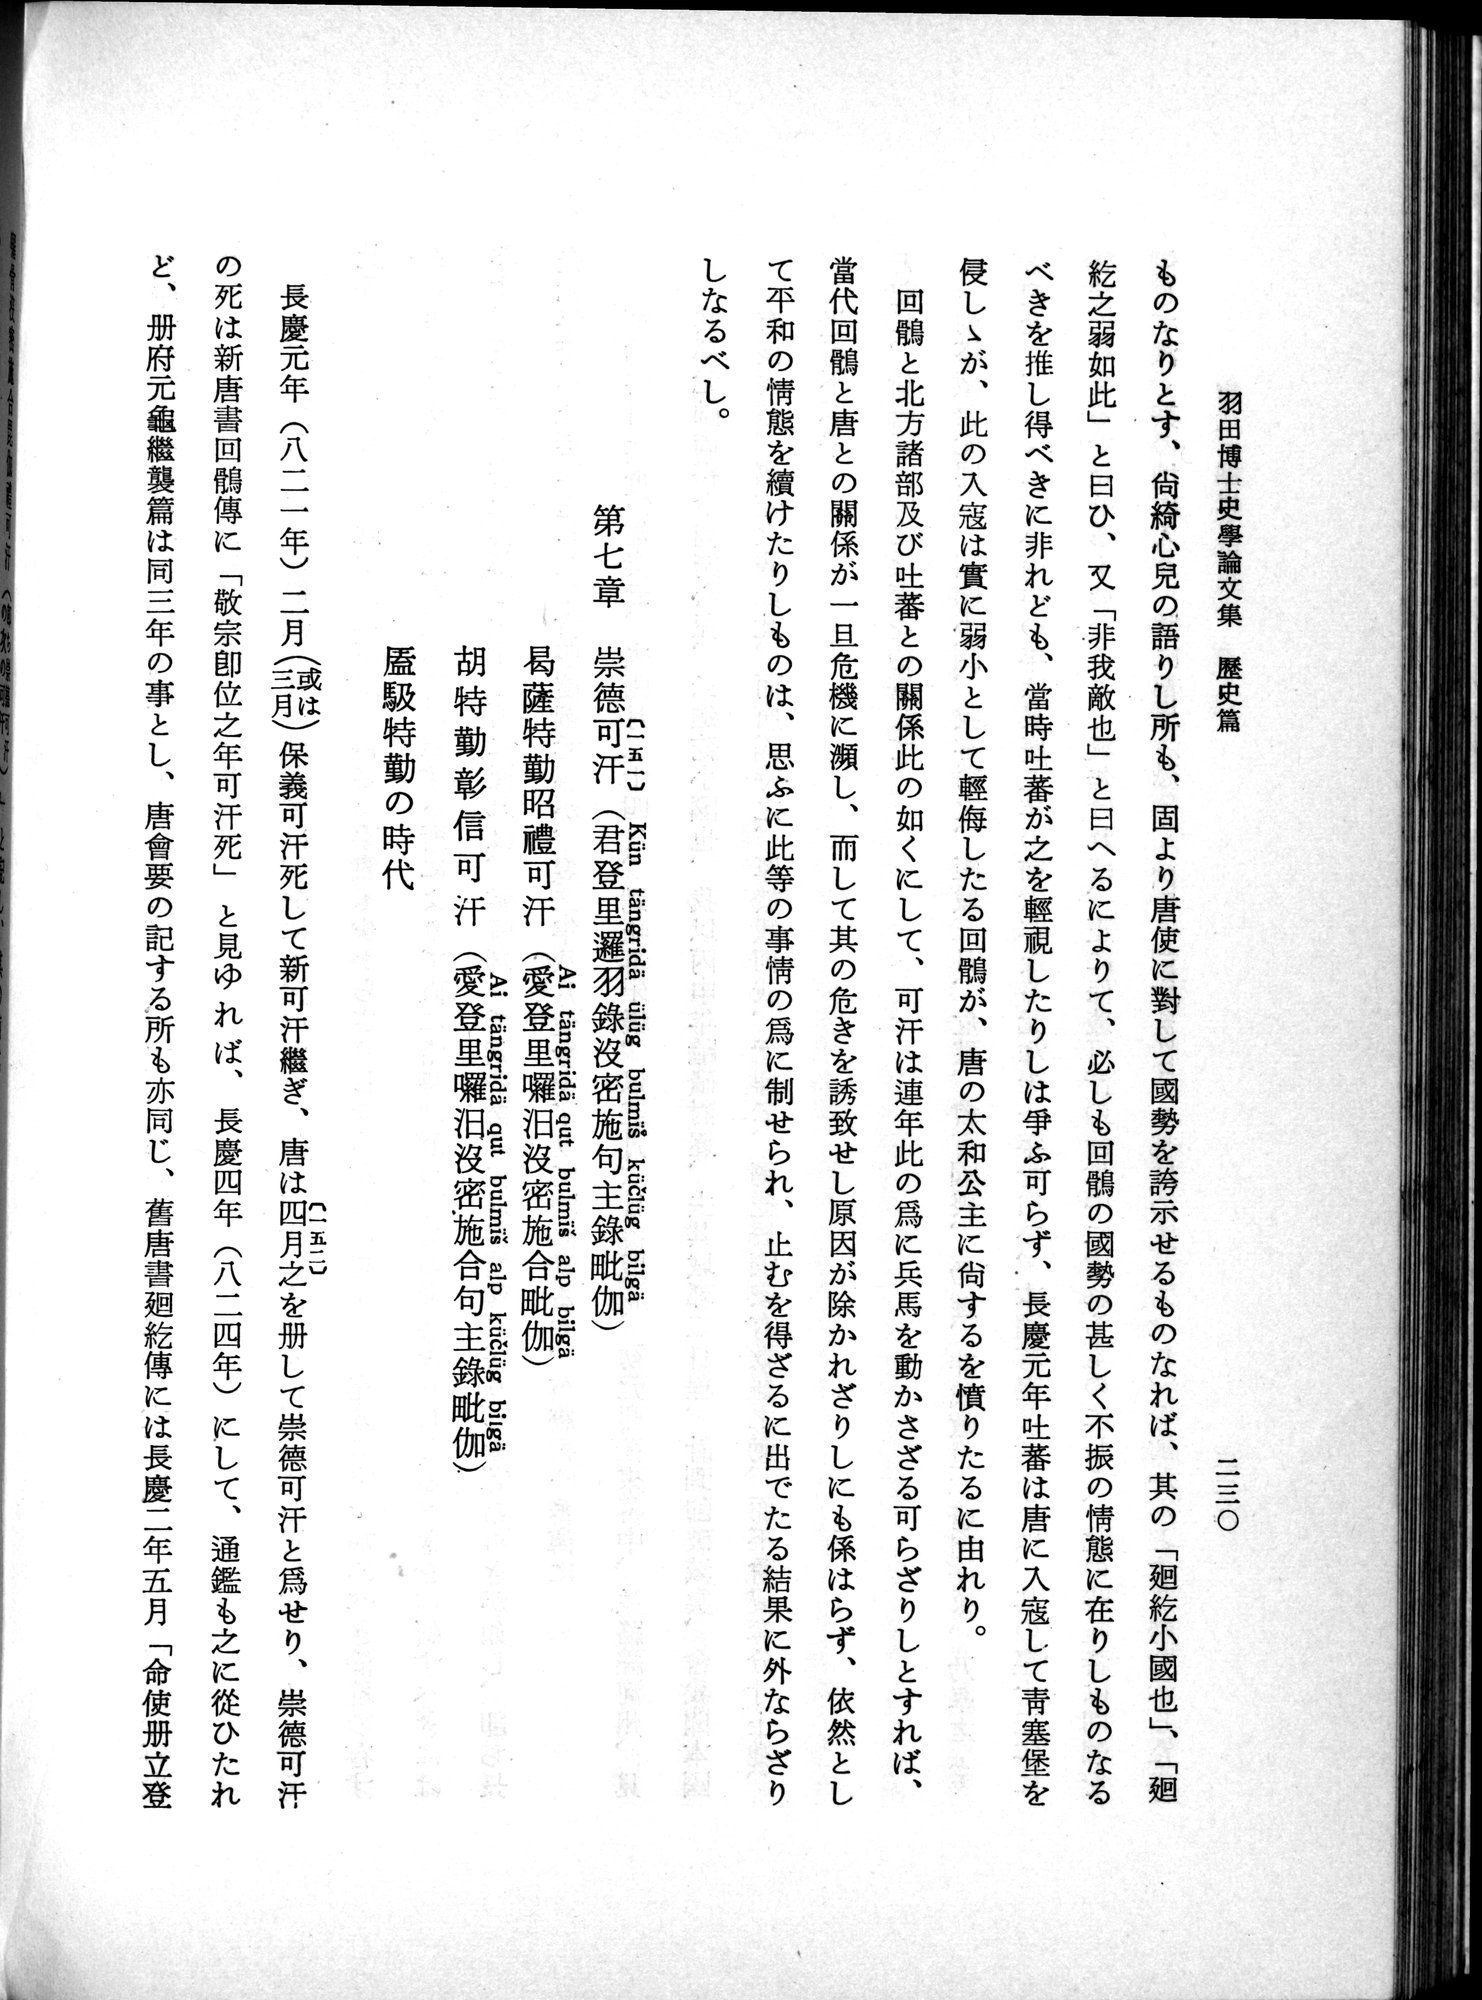 羽田博士史学論文集 : vol.1 / Page 268 (Grayscale High Resolution Image)